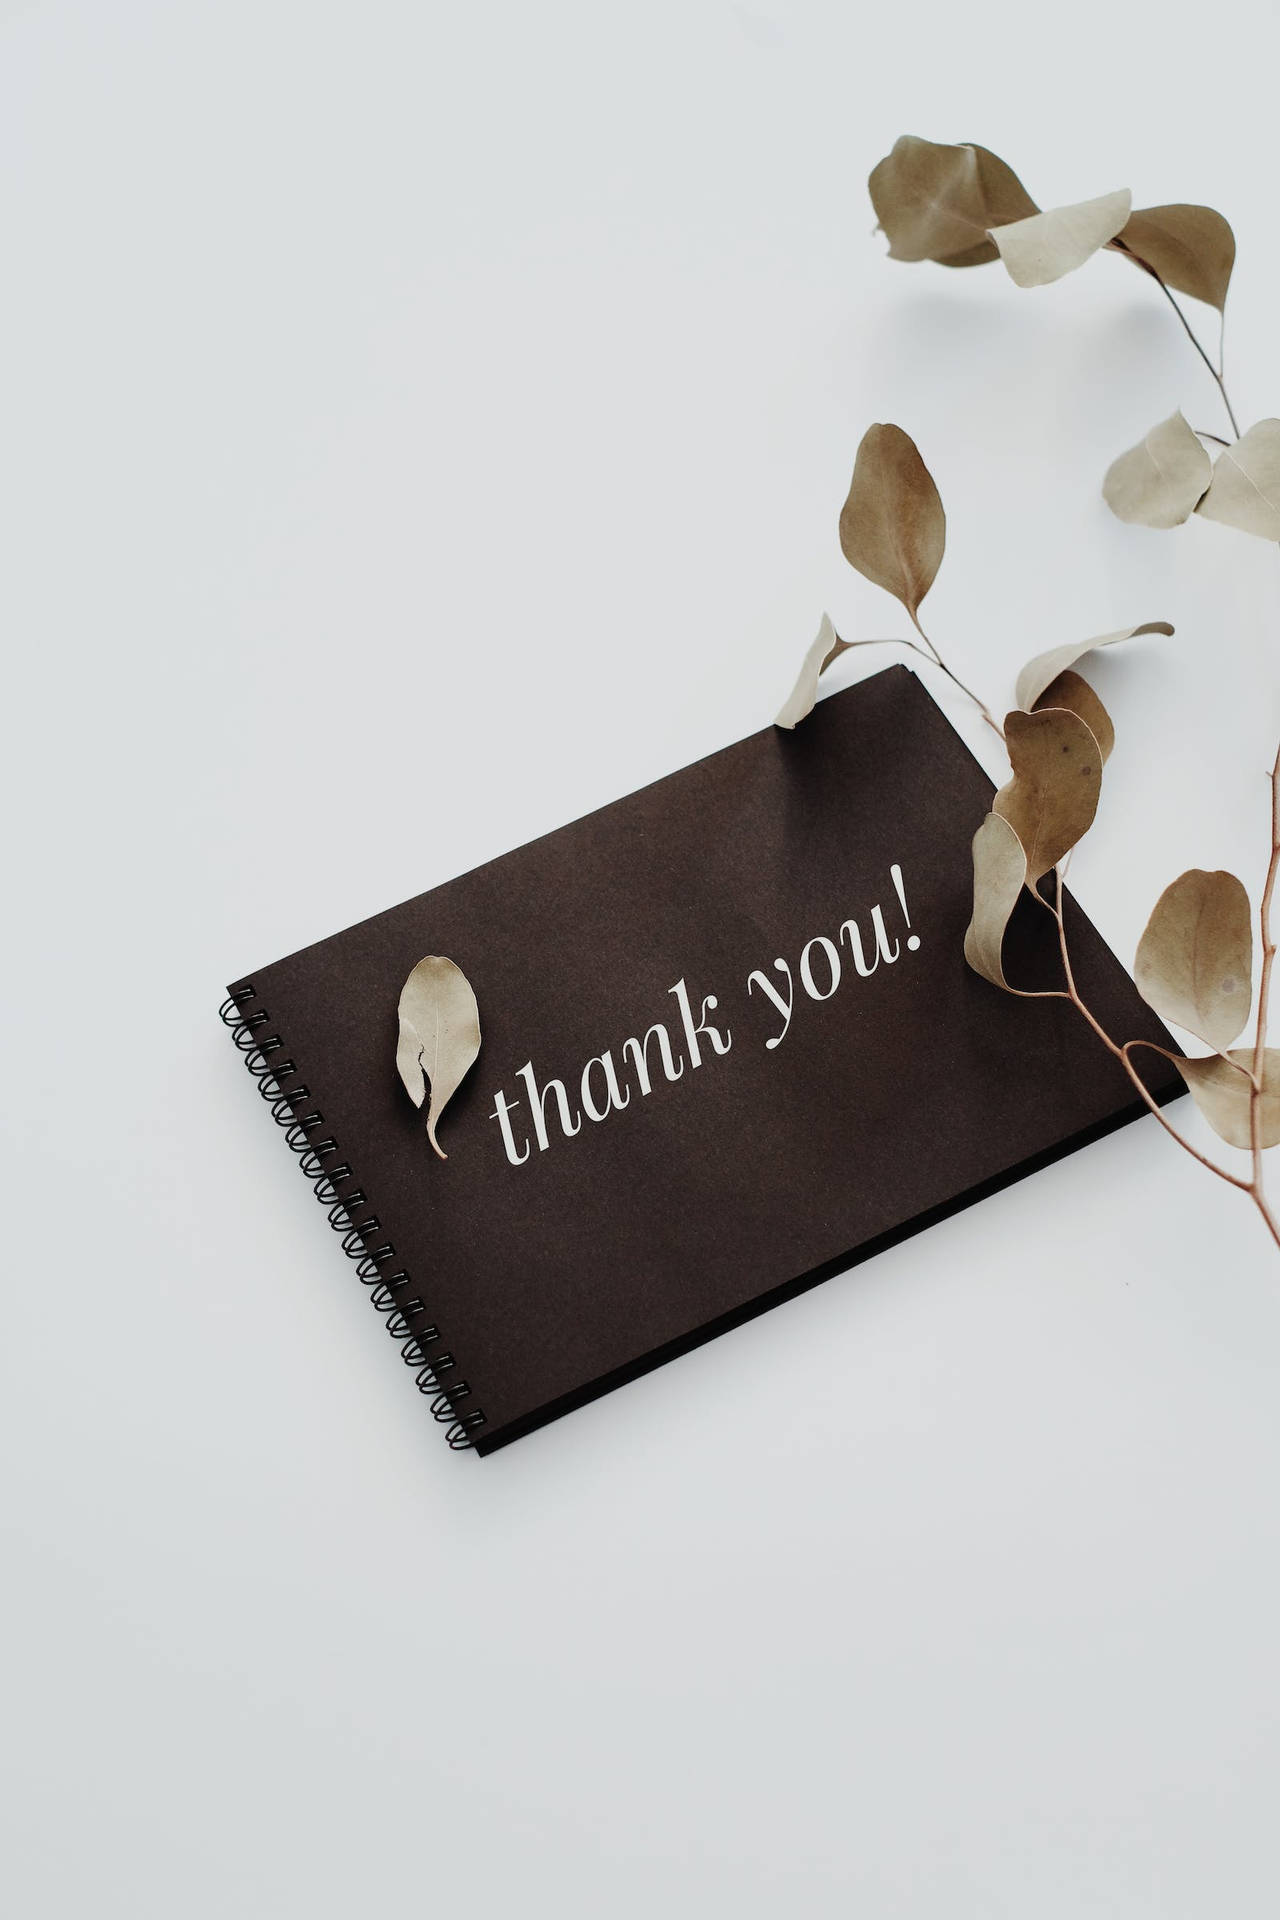 A Gratitude Gesture - An Aesthetic Thank You Notebook Wallpaper